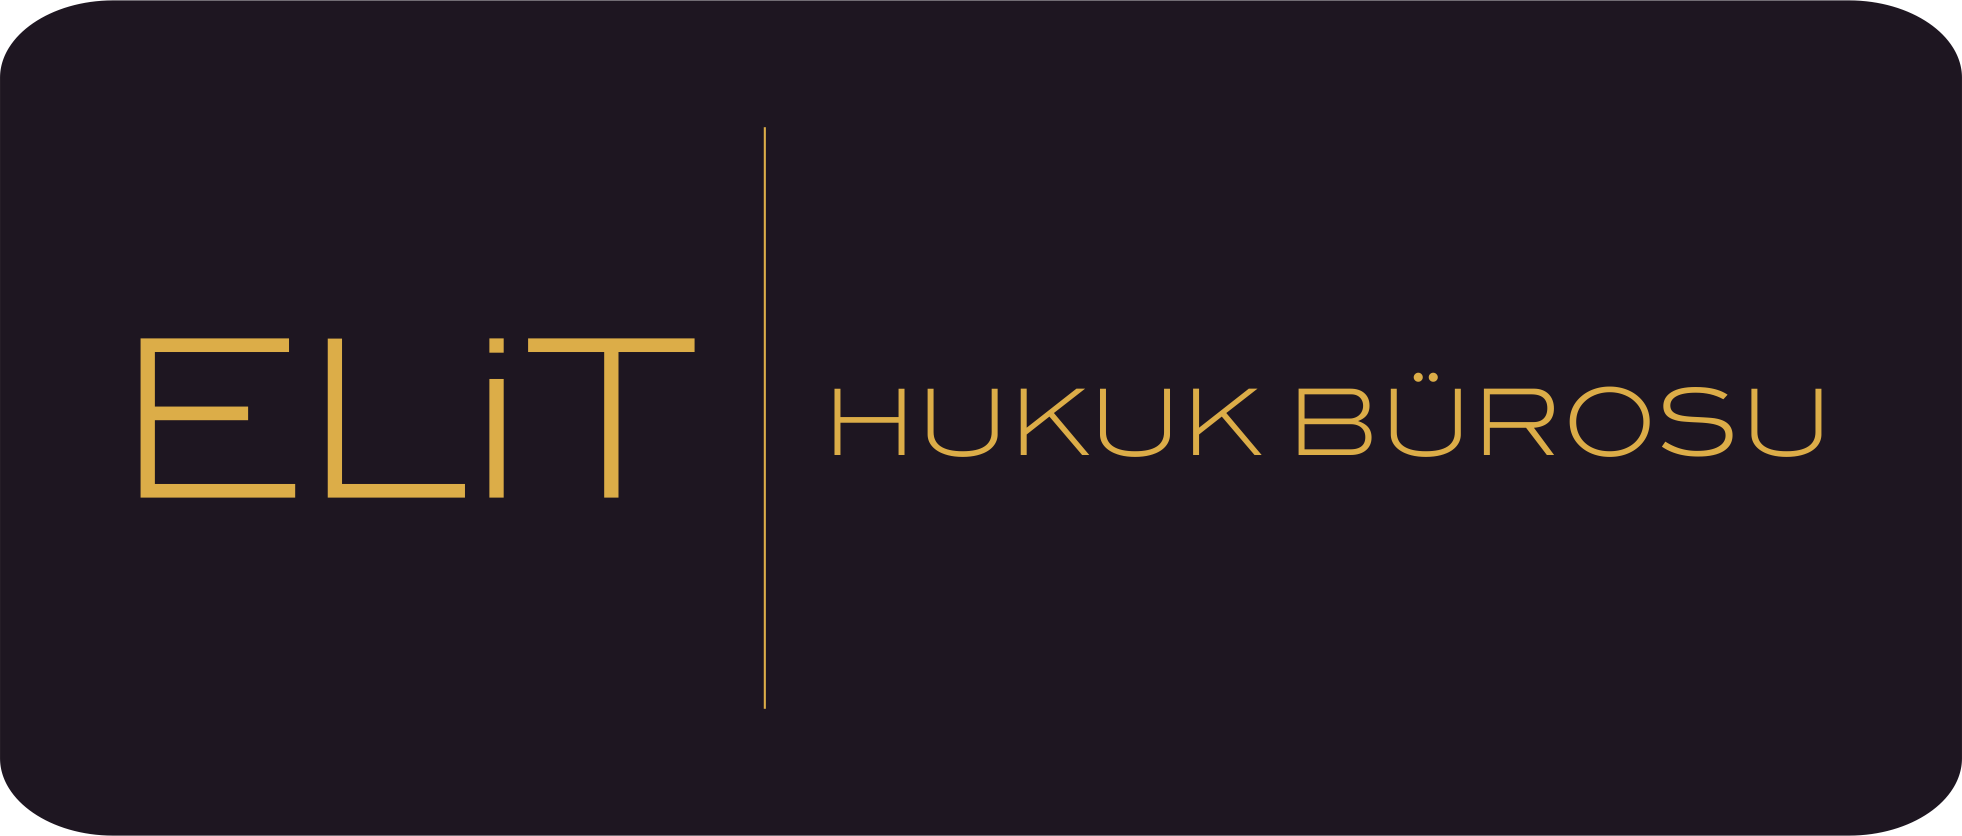 Elit Hukuk Bürosu Png Hdpng.com  - Burol, Transparent background PNG HD thumbnail